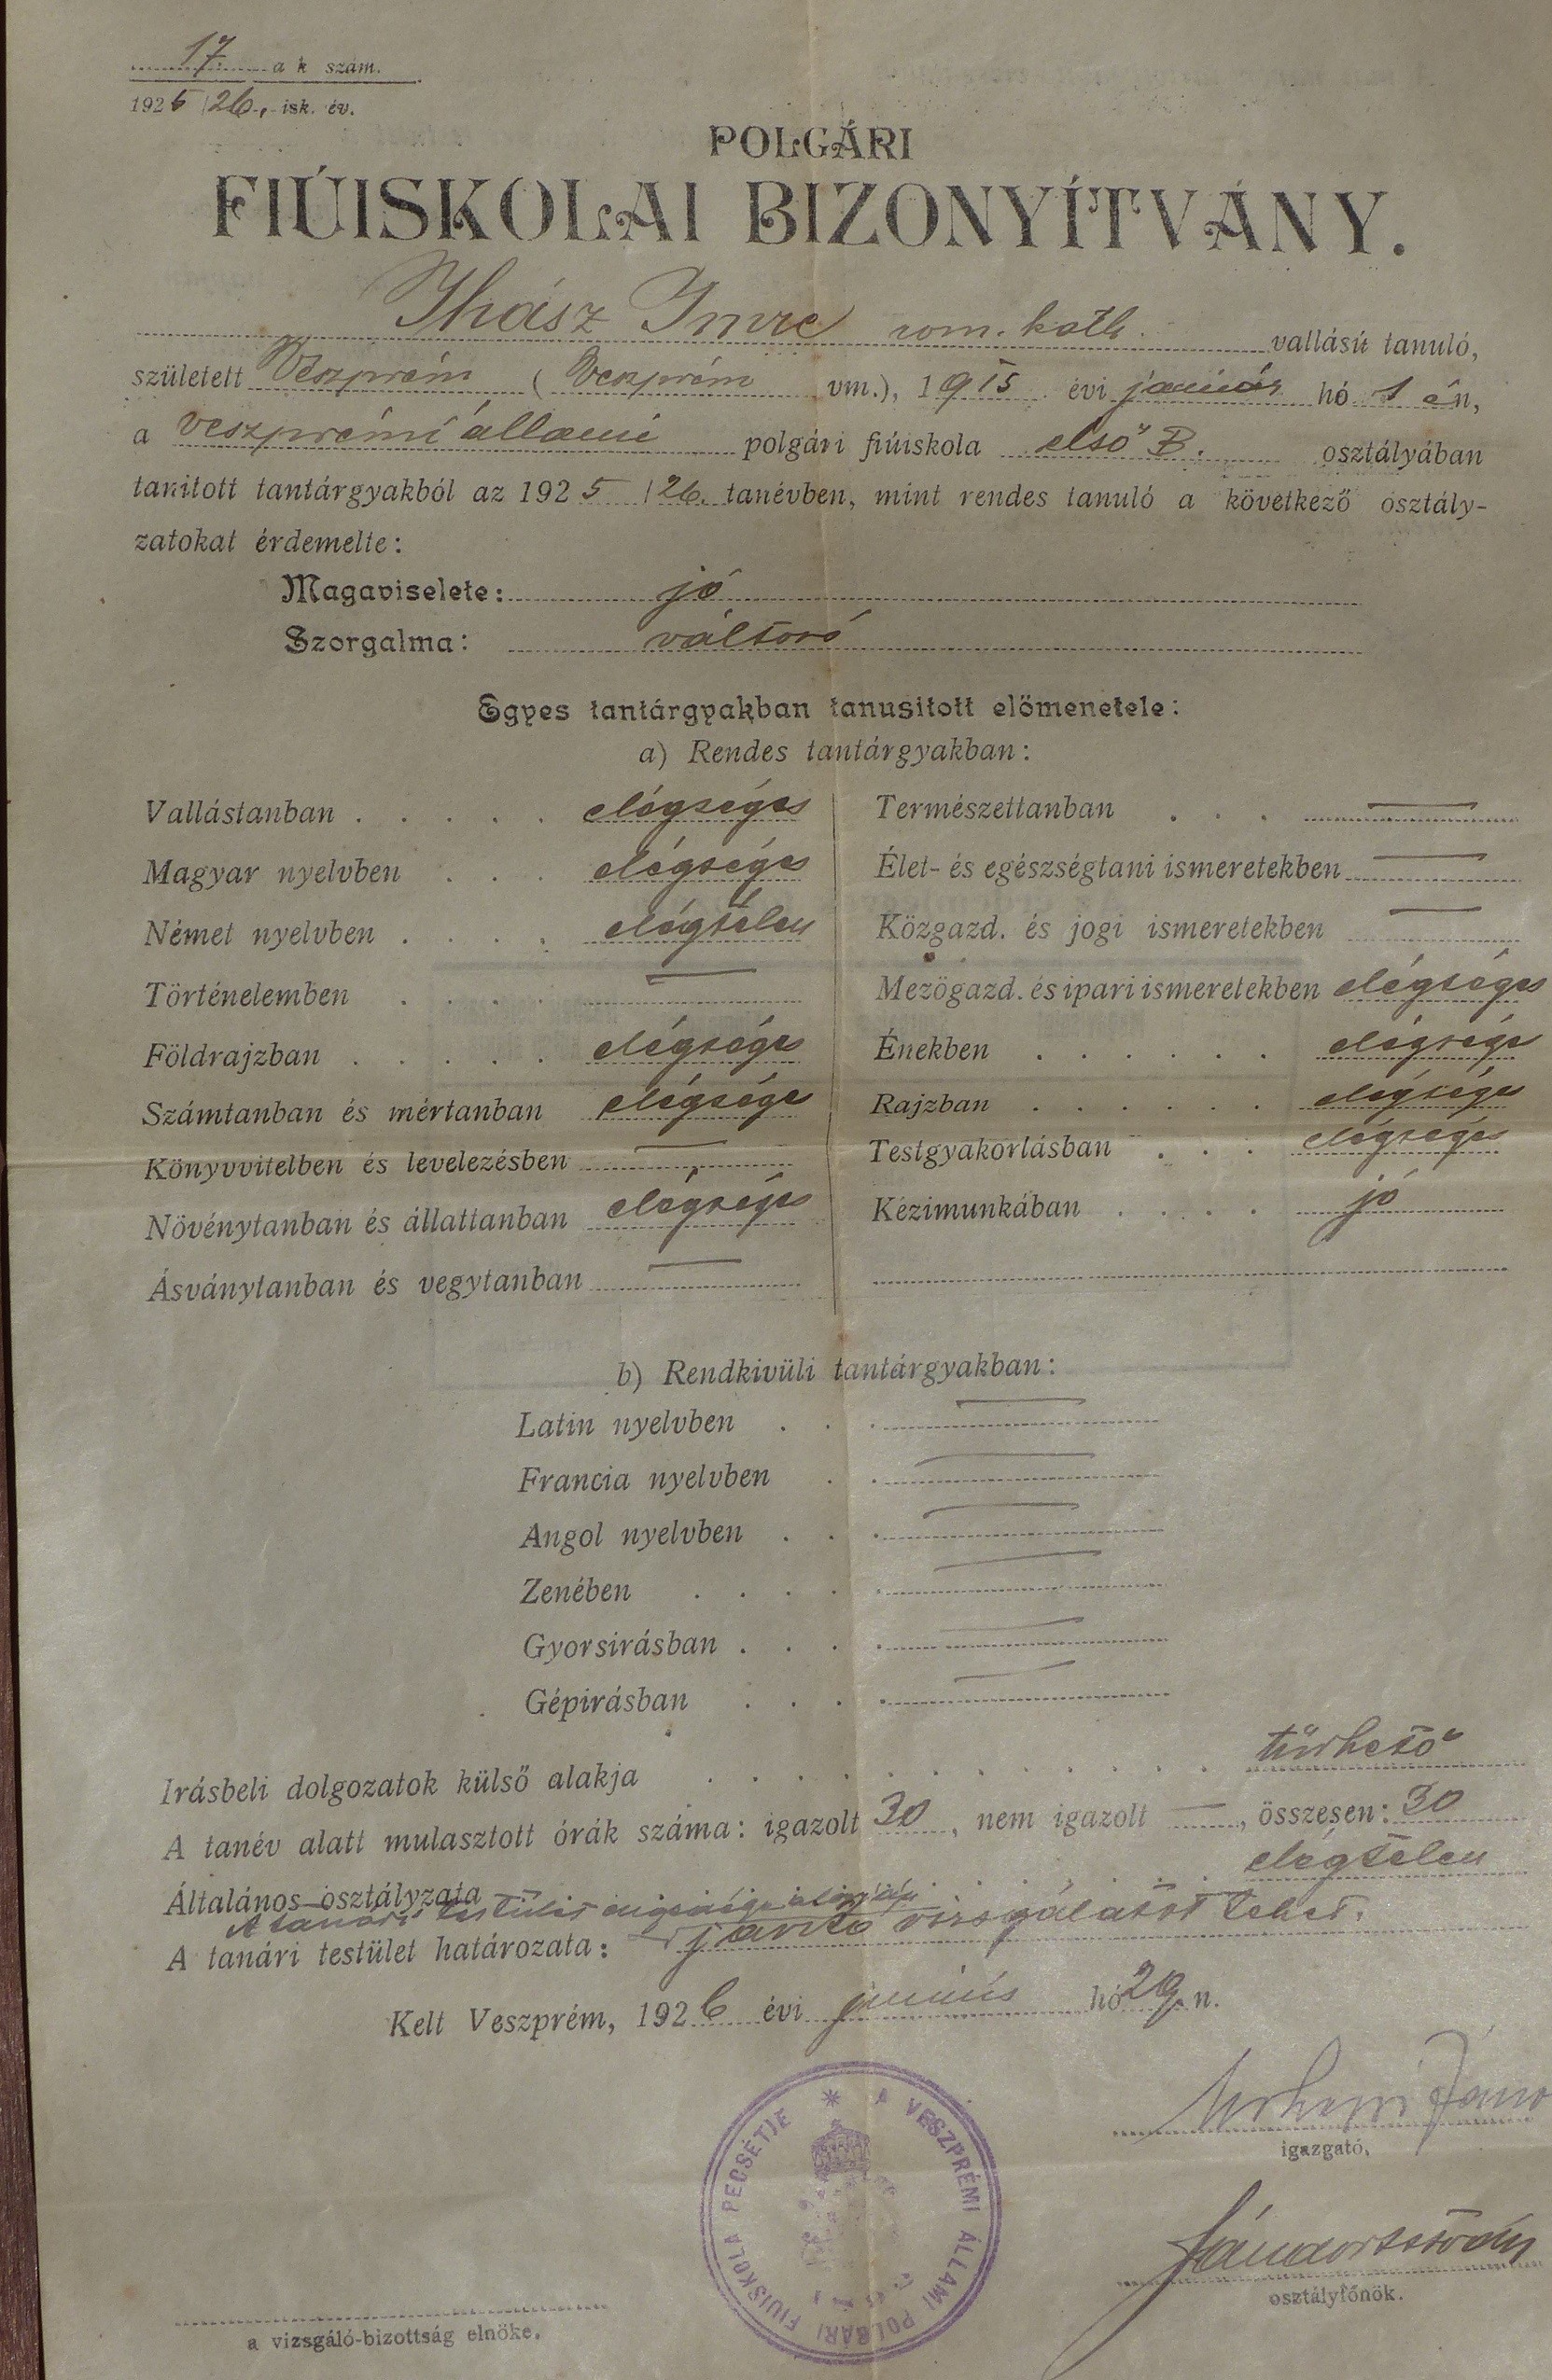 Polgári fiúiskolai bizonyítvány Ihász Imre részére (Tapolcai Városi Múzeum CC BY-NC-SA)